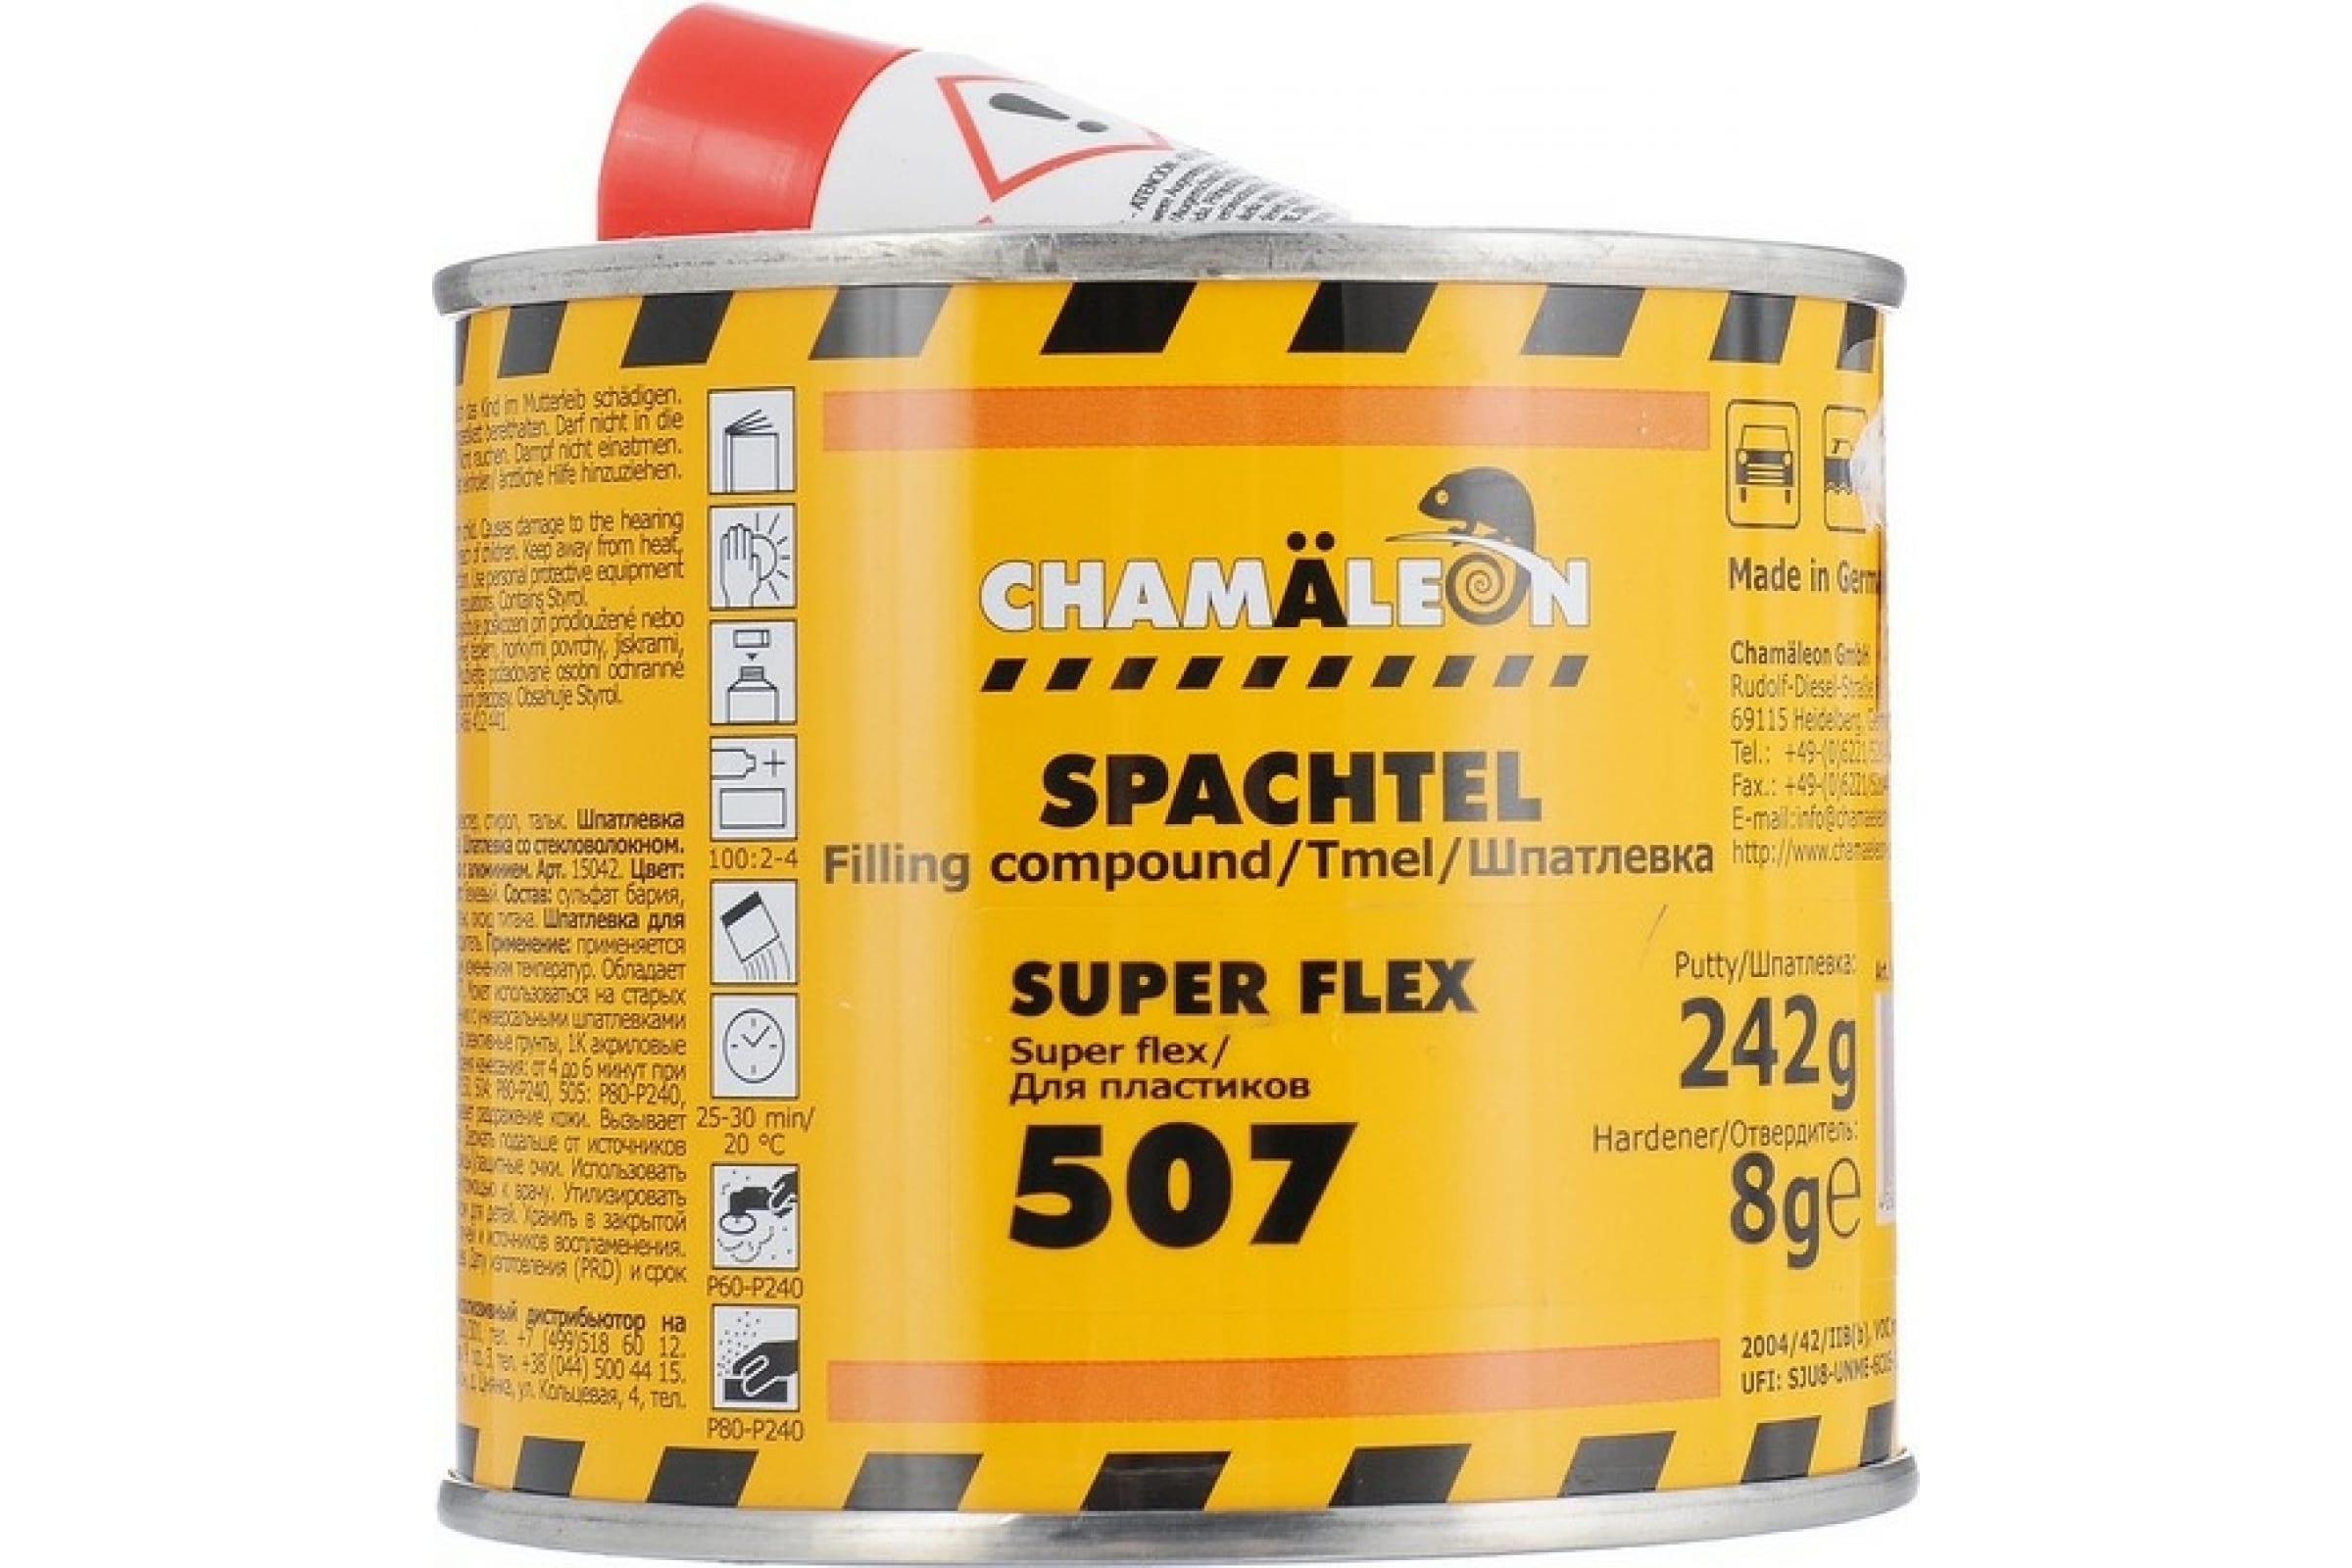 CHAMAELEON Шпатлевка для пластиков вкл.отвердитель 0,250кг 15072 шпатлевка для пластиков chamaeleon